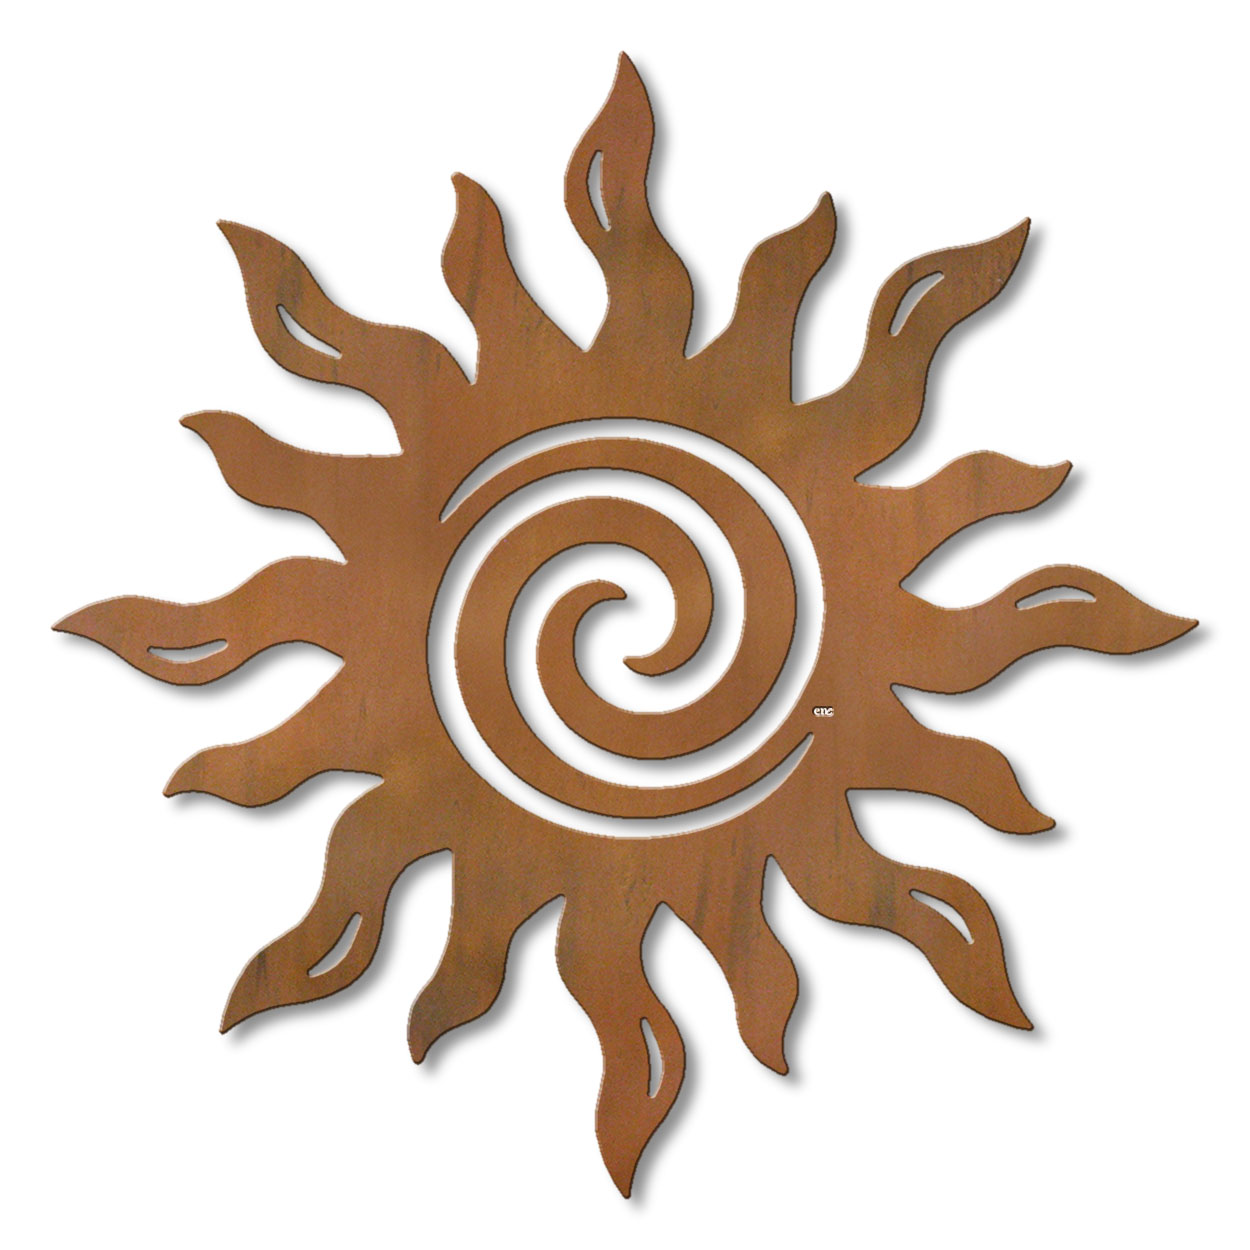 625039r - 18 or 24in Metal Wall Art - Spiral Sun - Rust Patina